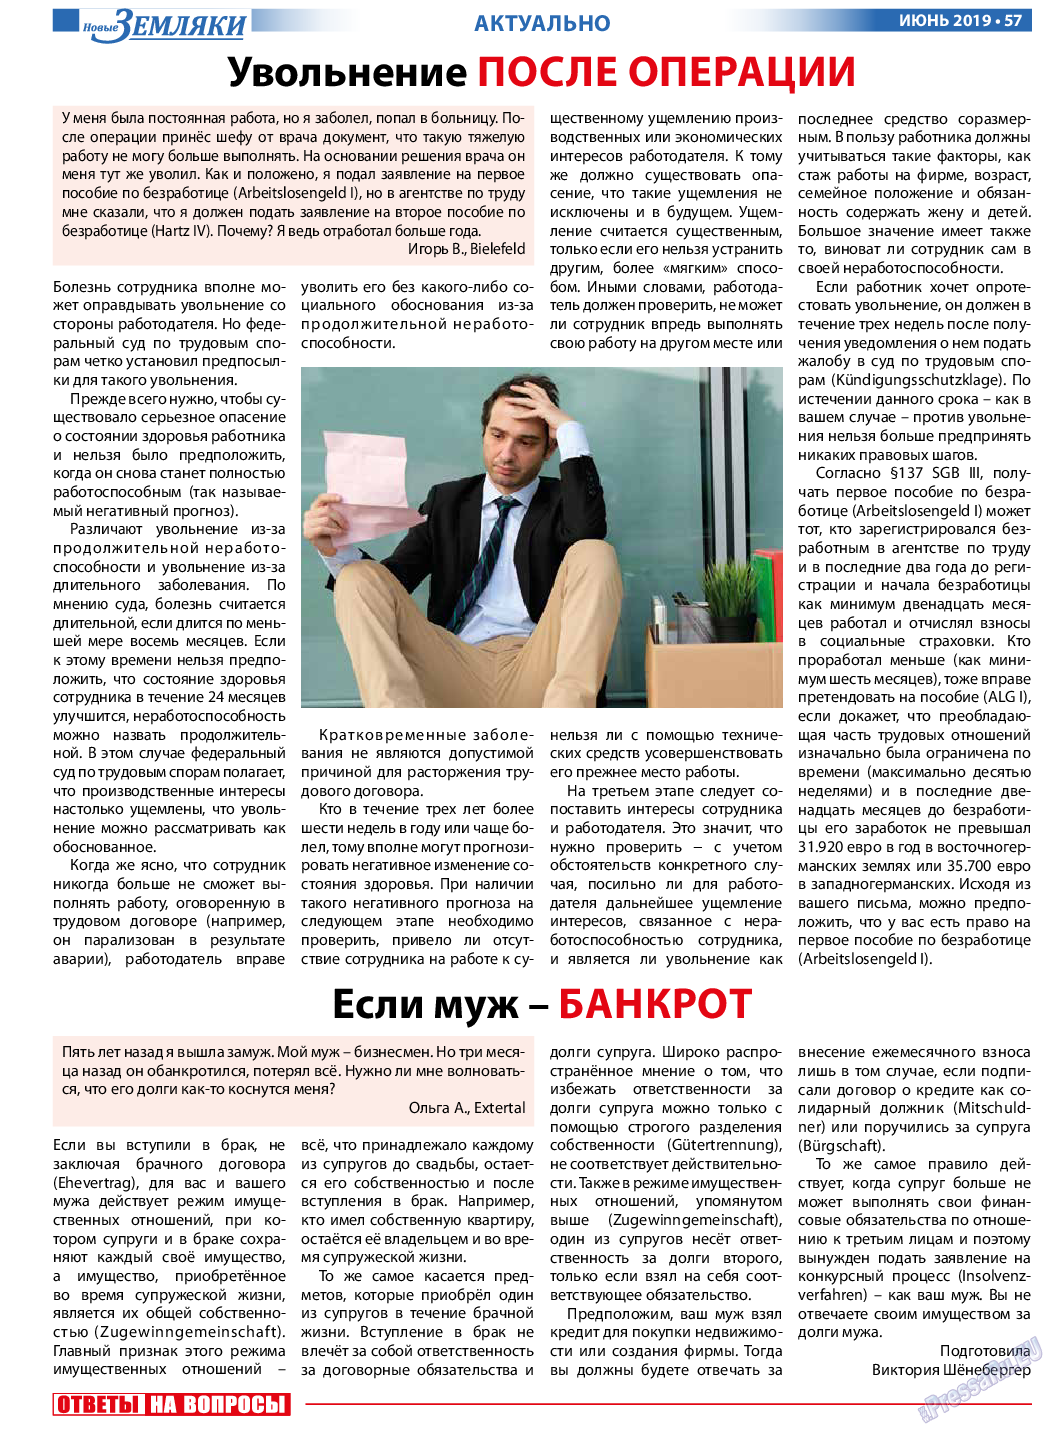 Новые Земляки, газета. 2019 №6 стр.57